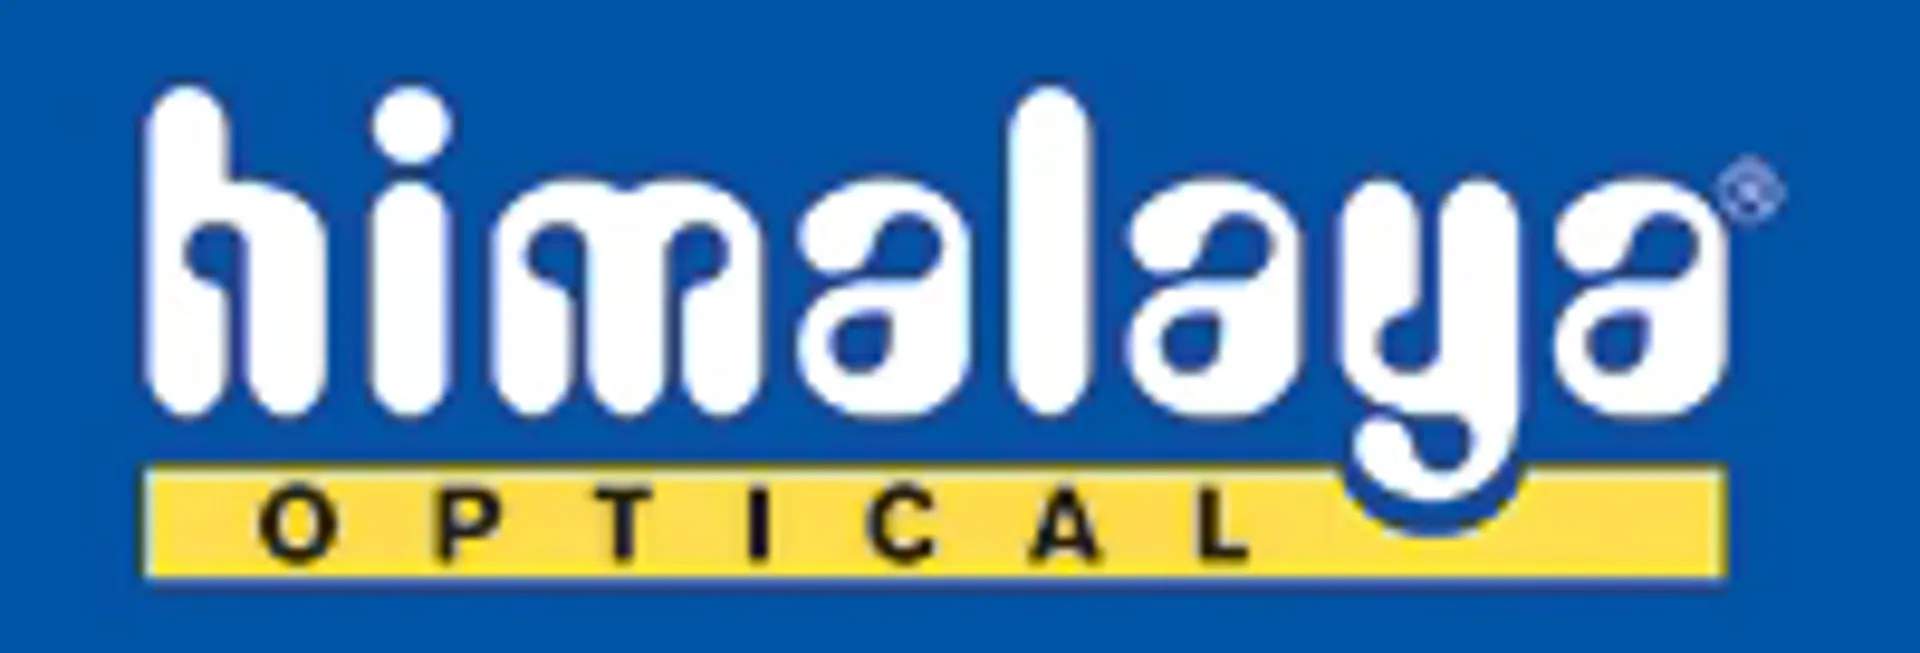 HIMALAYA OPTICAL logo. Current catalogue